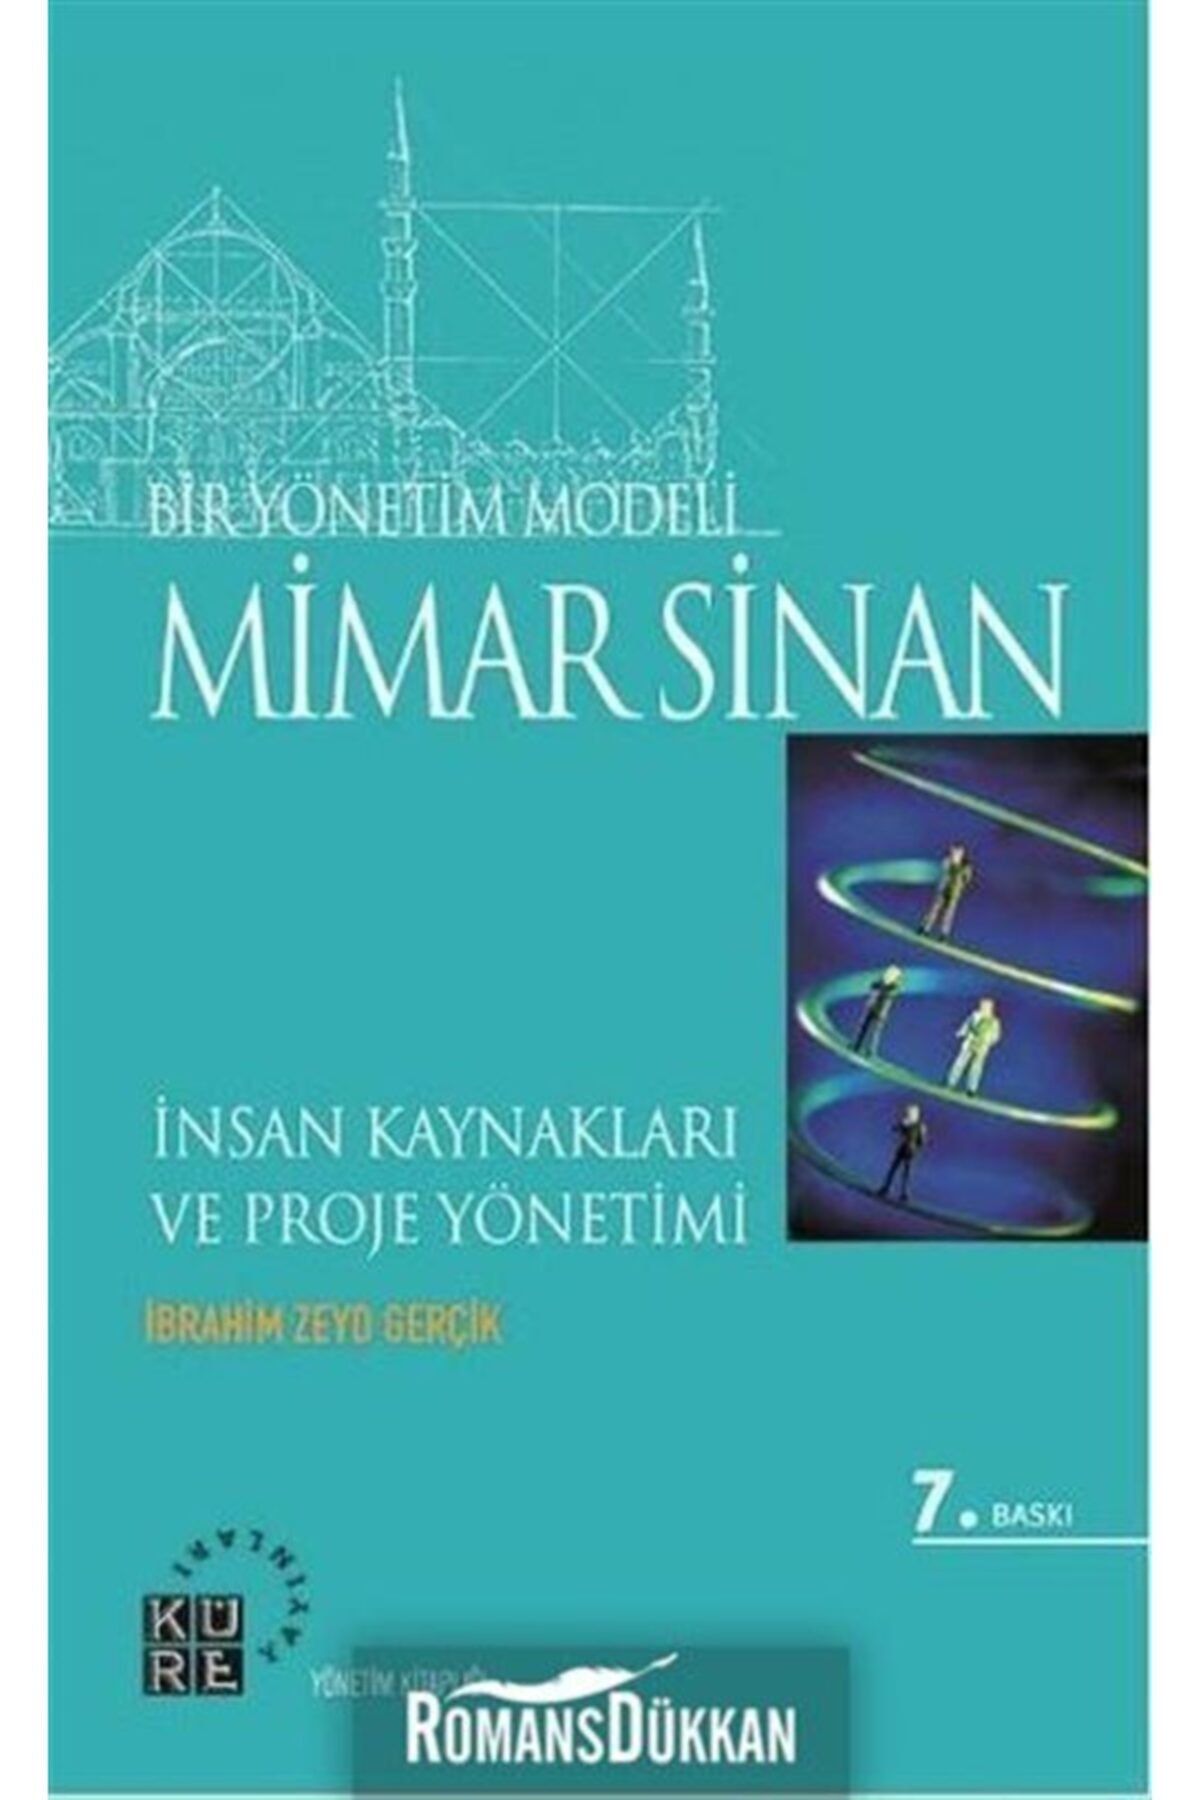 Küre Yayınları Bir Yönetim Modeli: Mimar Sinan & Insan Kaynakları Ve Proje Yönetimi